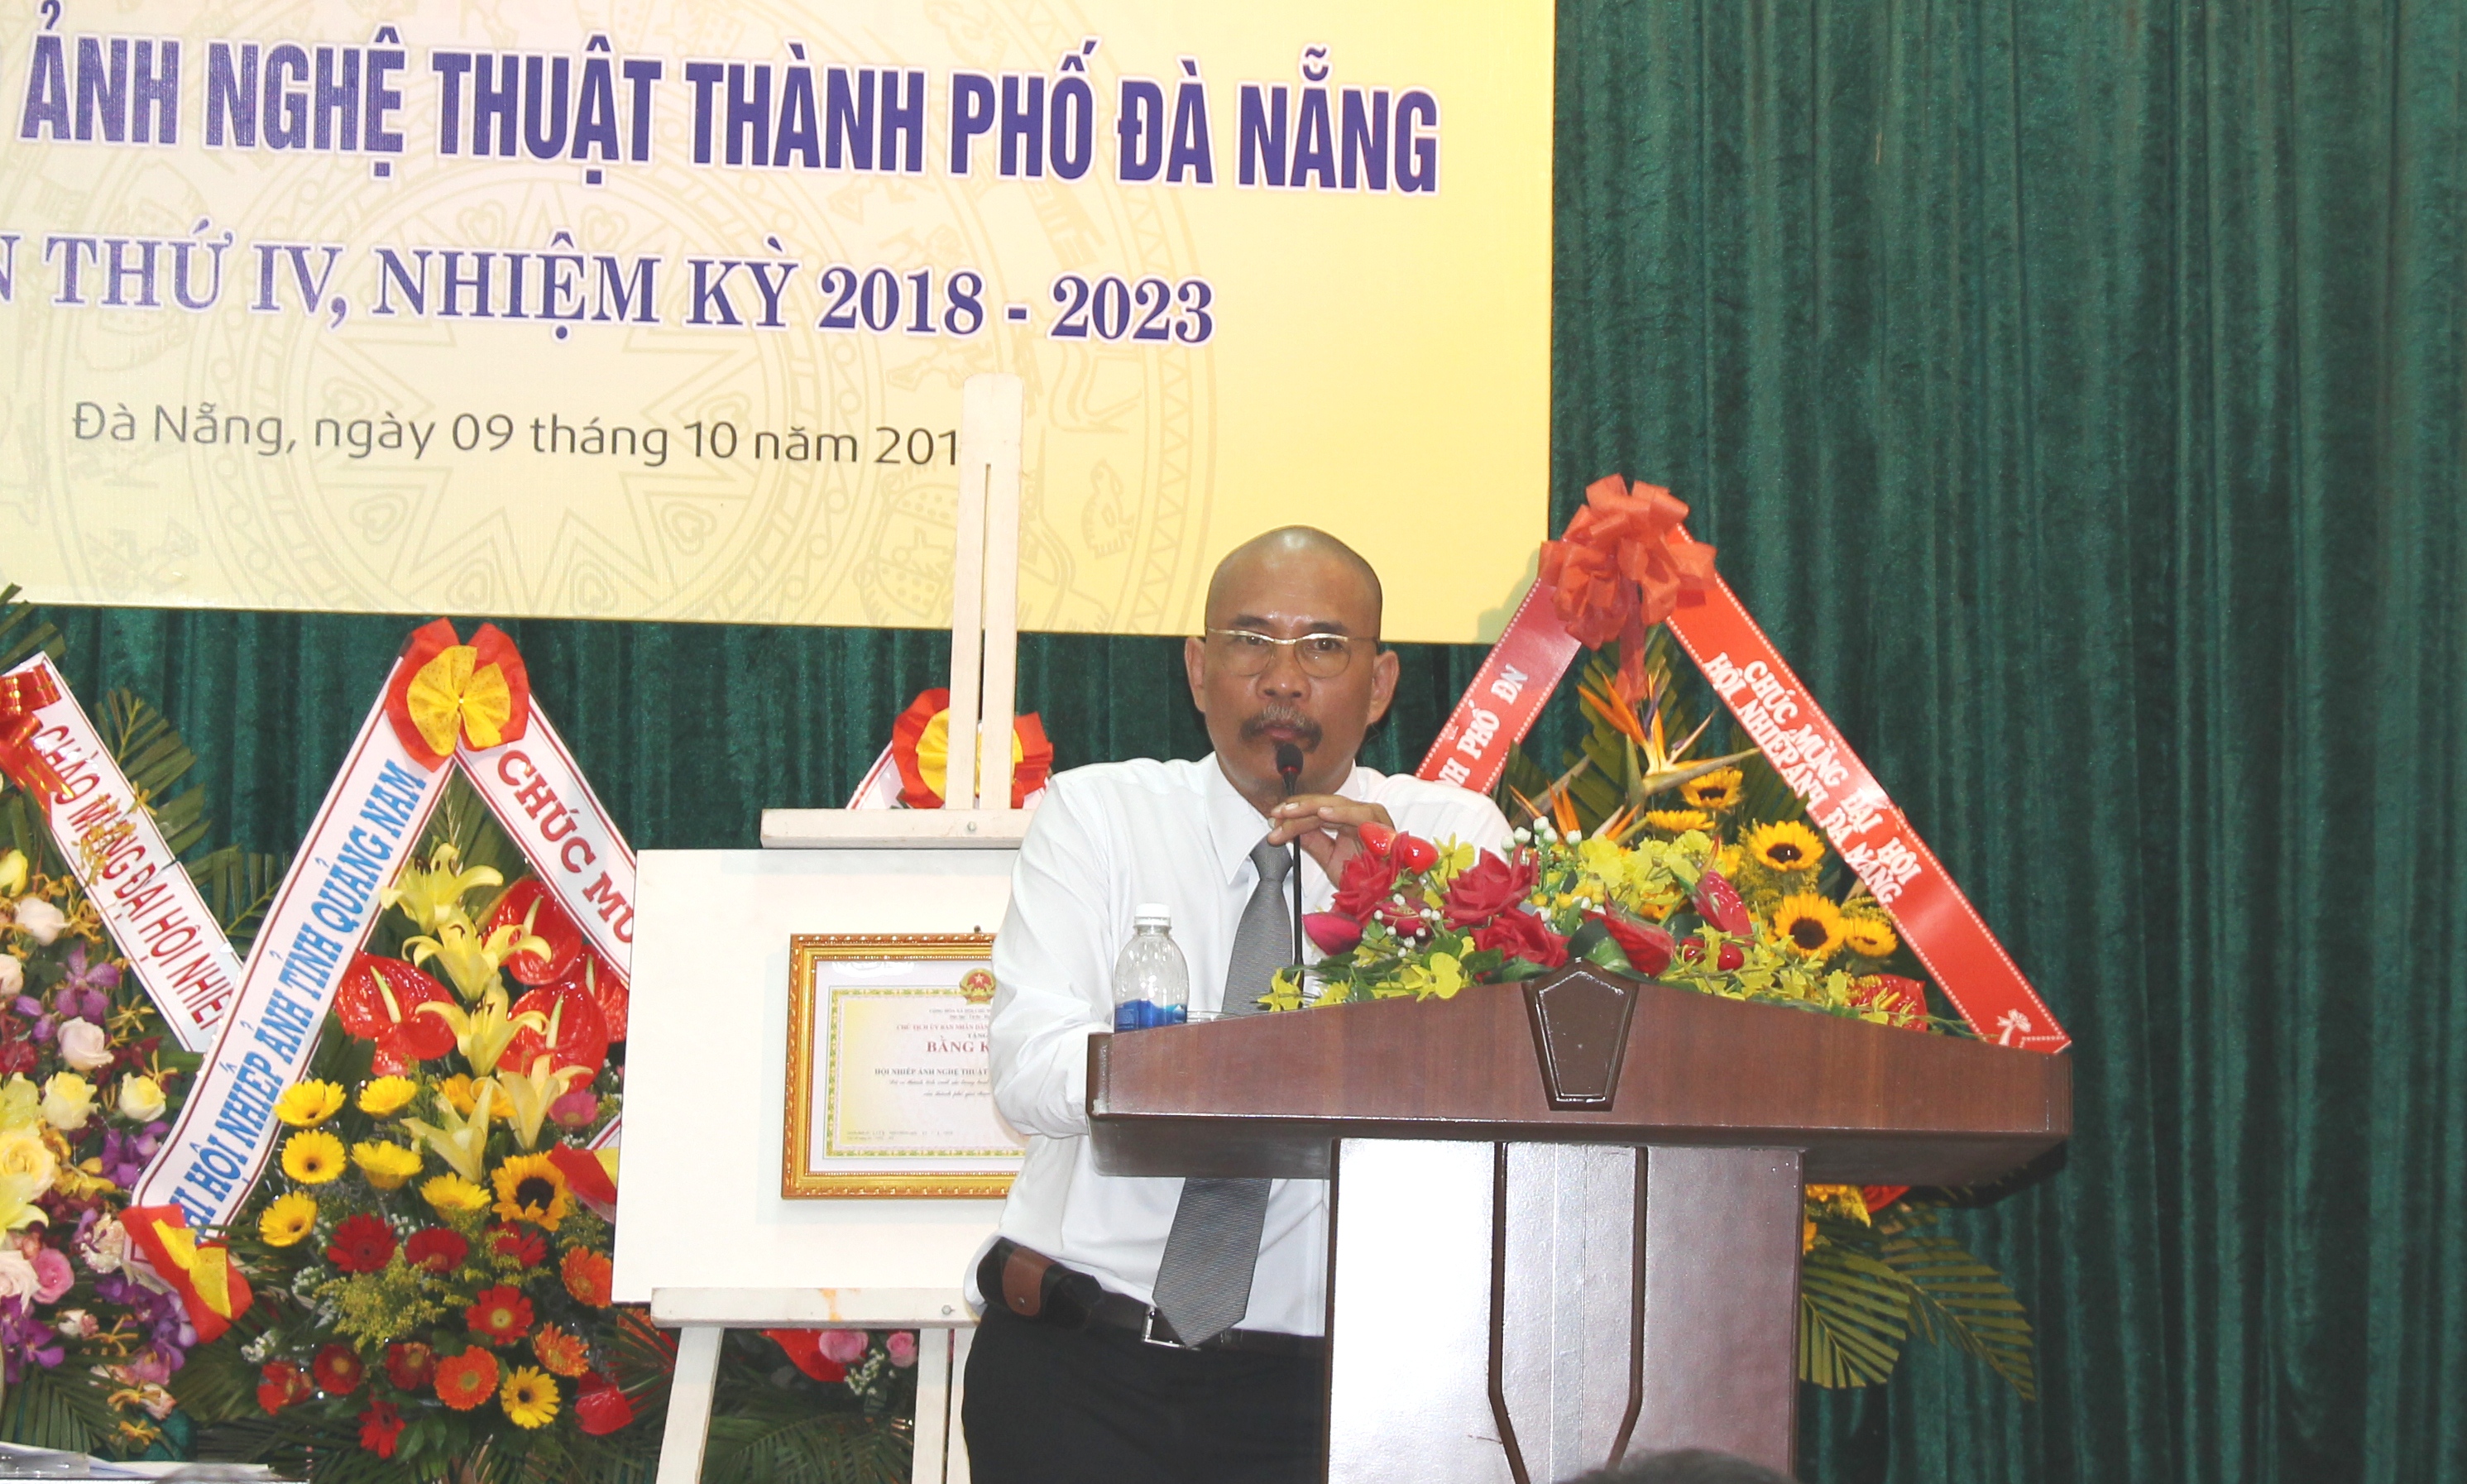 Đại hội Hội Nhiếp ảnh Nghệ thuật thành phố Đà Nẵng lần thứ IV (nhiệm kỳ 2018 - 2023)